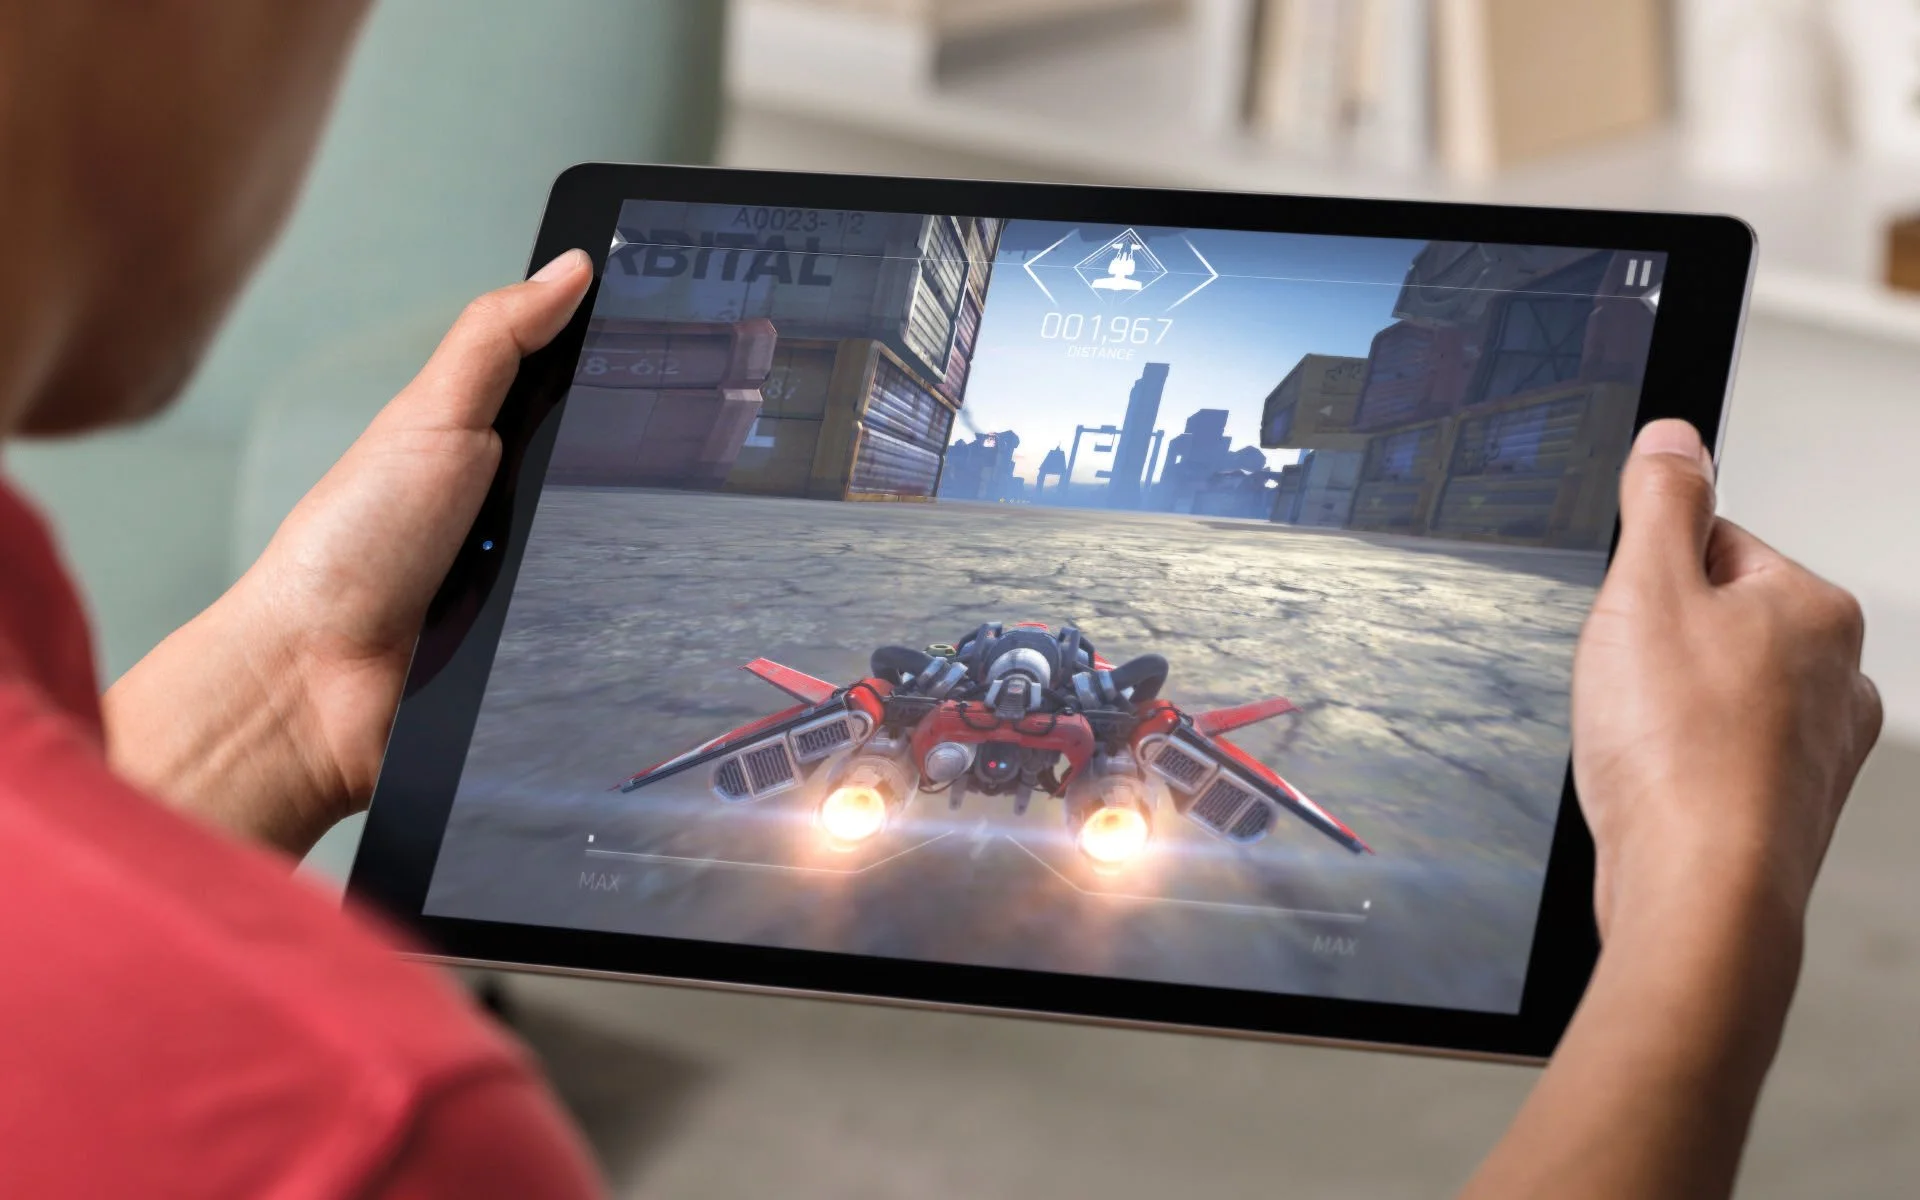 Слухи: Apple упразднит iPad mini и покажет гибкие планшеты - фото 1